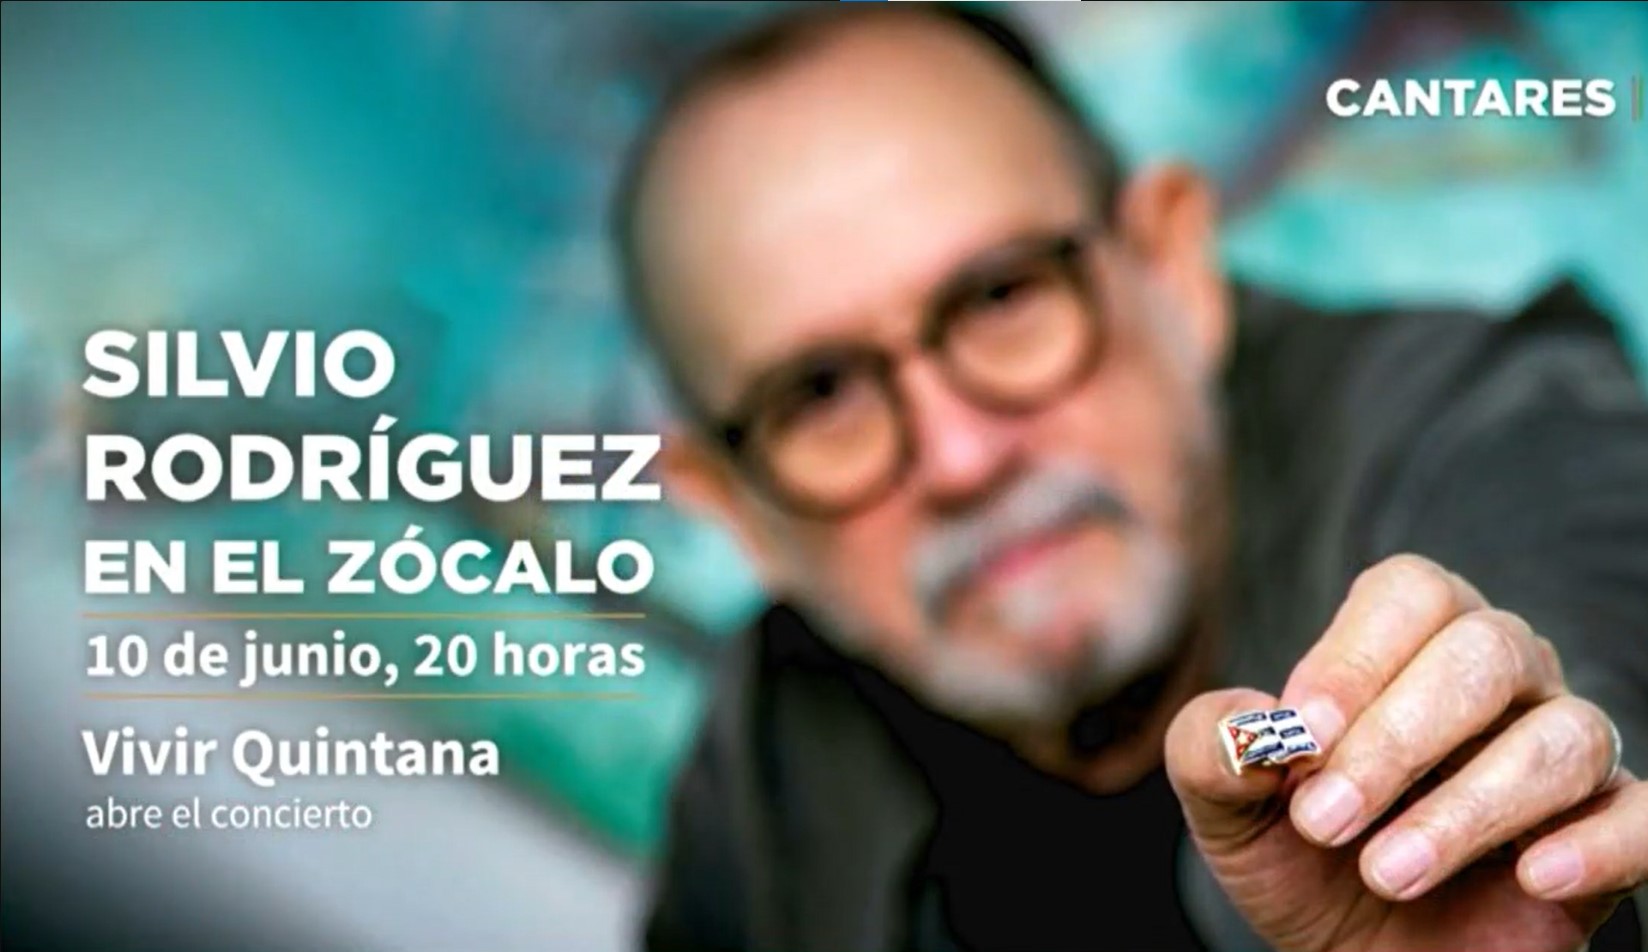  Silvio Rodríguez se presentará este 10 de junio en el Zócalo Capitalino  (Foto: Twitter/@Claudiashein)